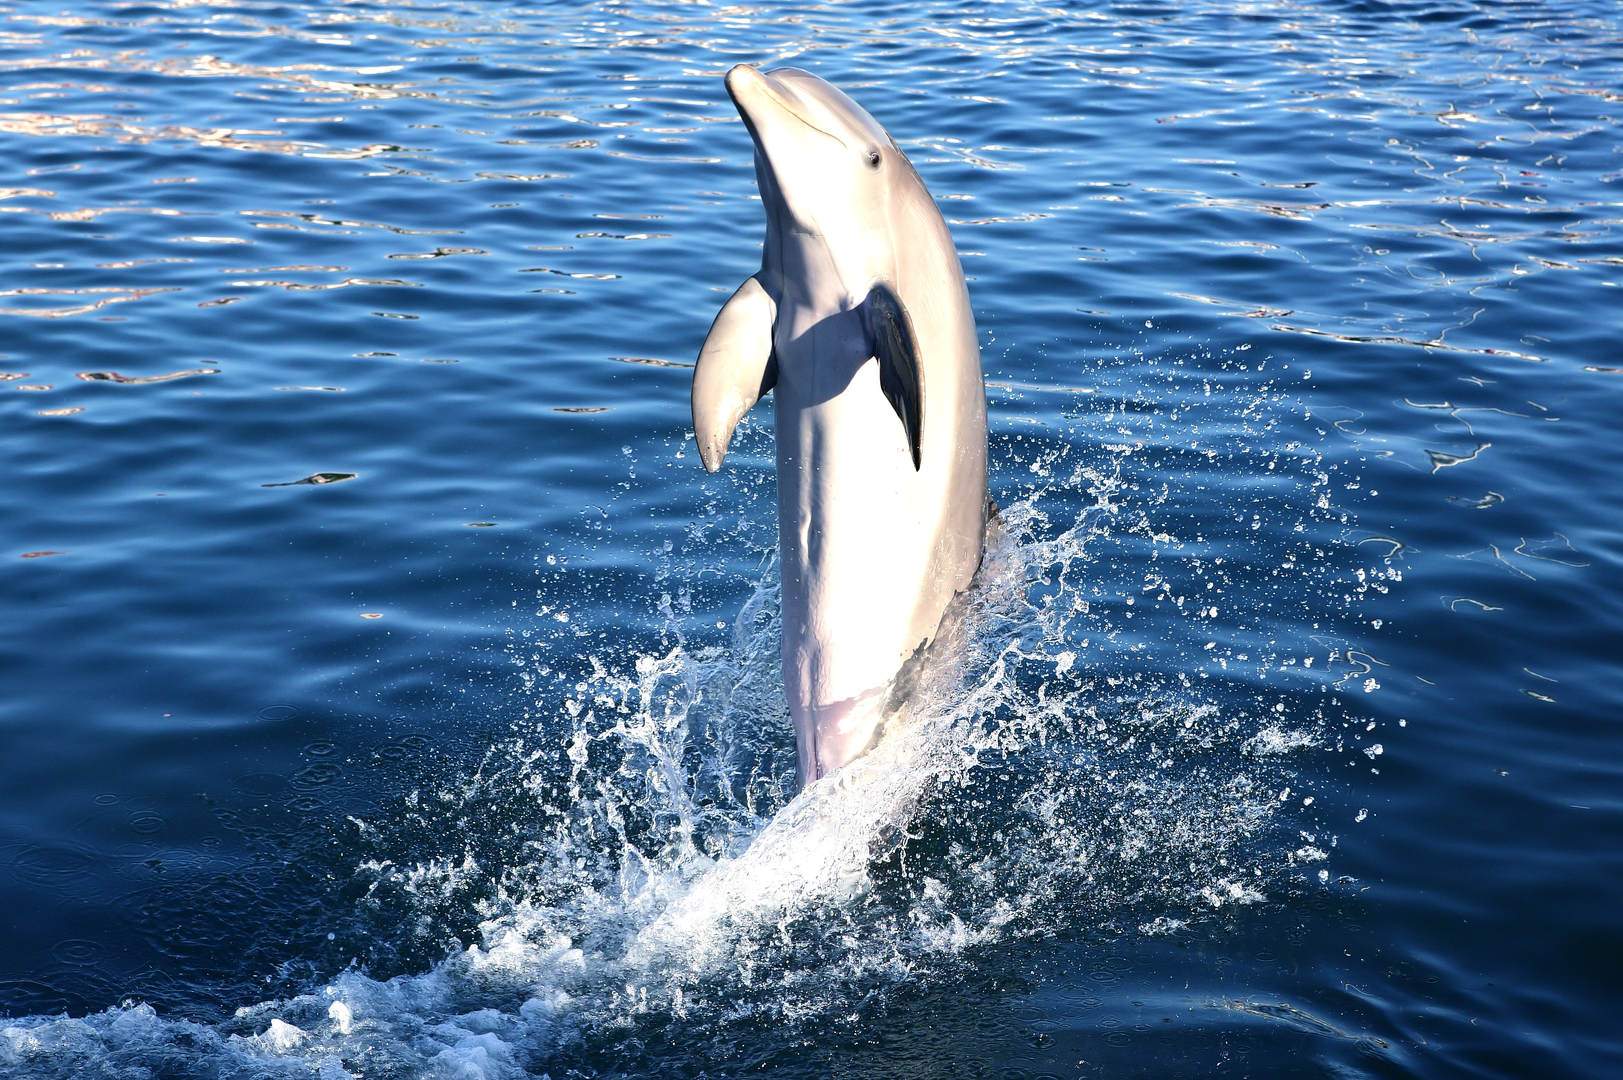 Delfin- és bálnafigyelés Los Cristianosból